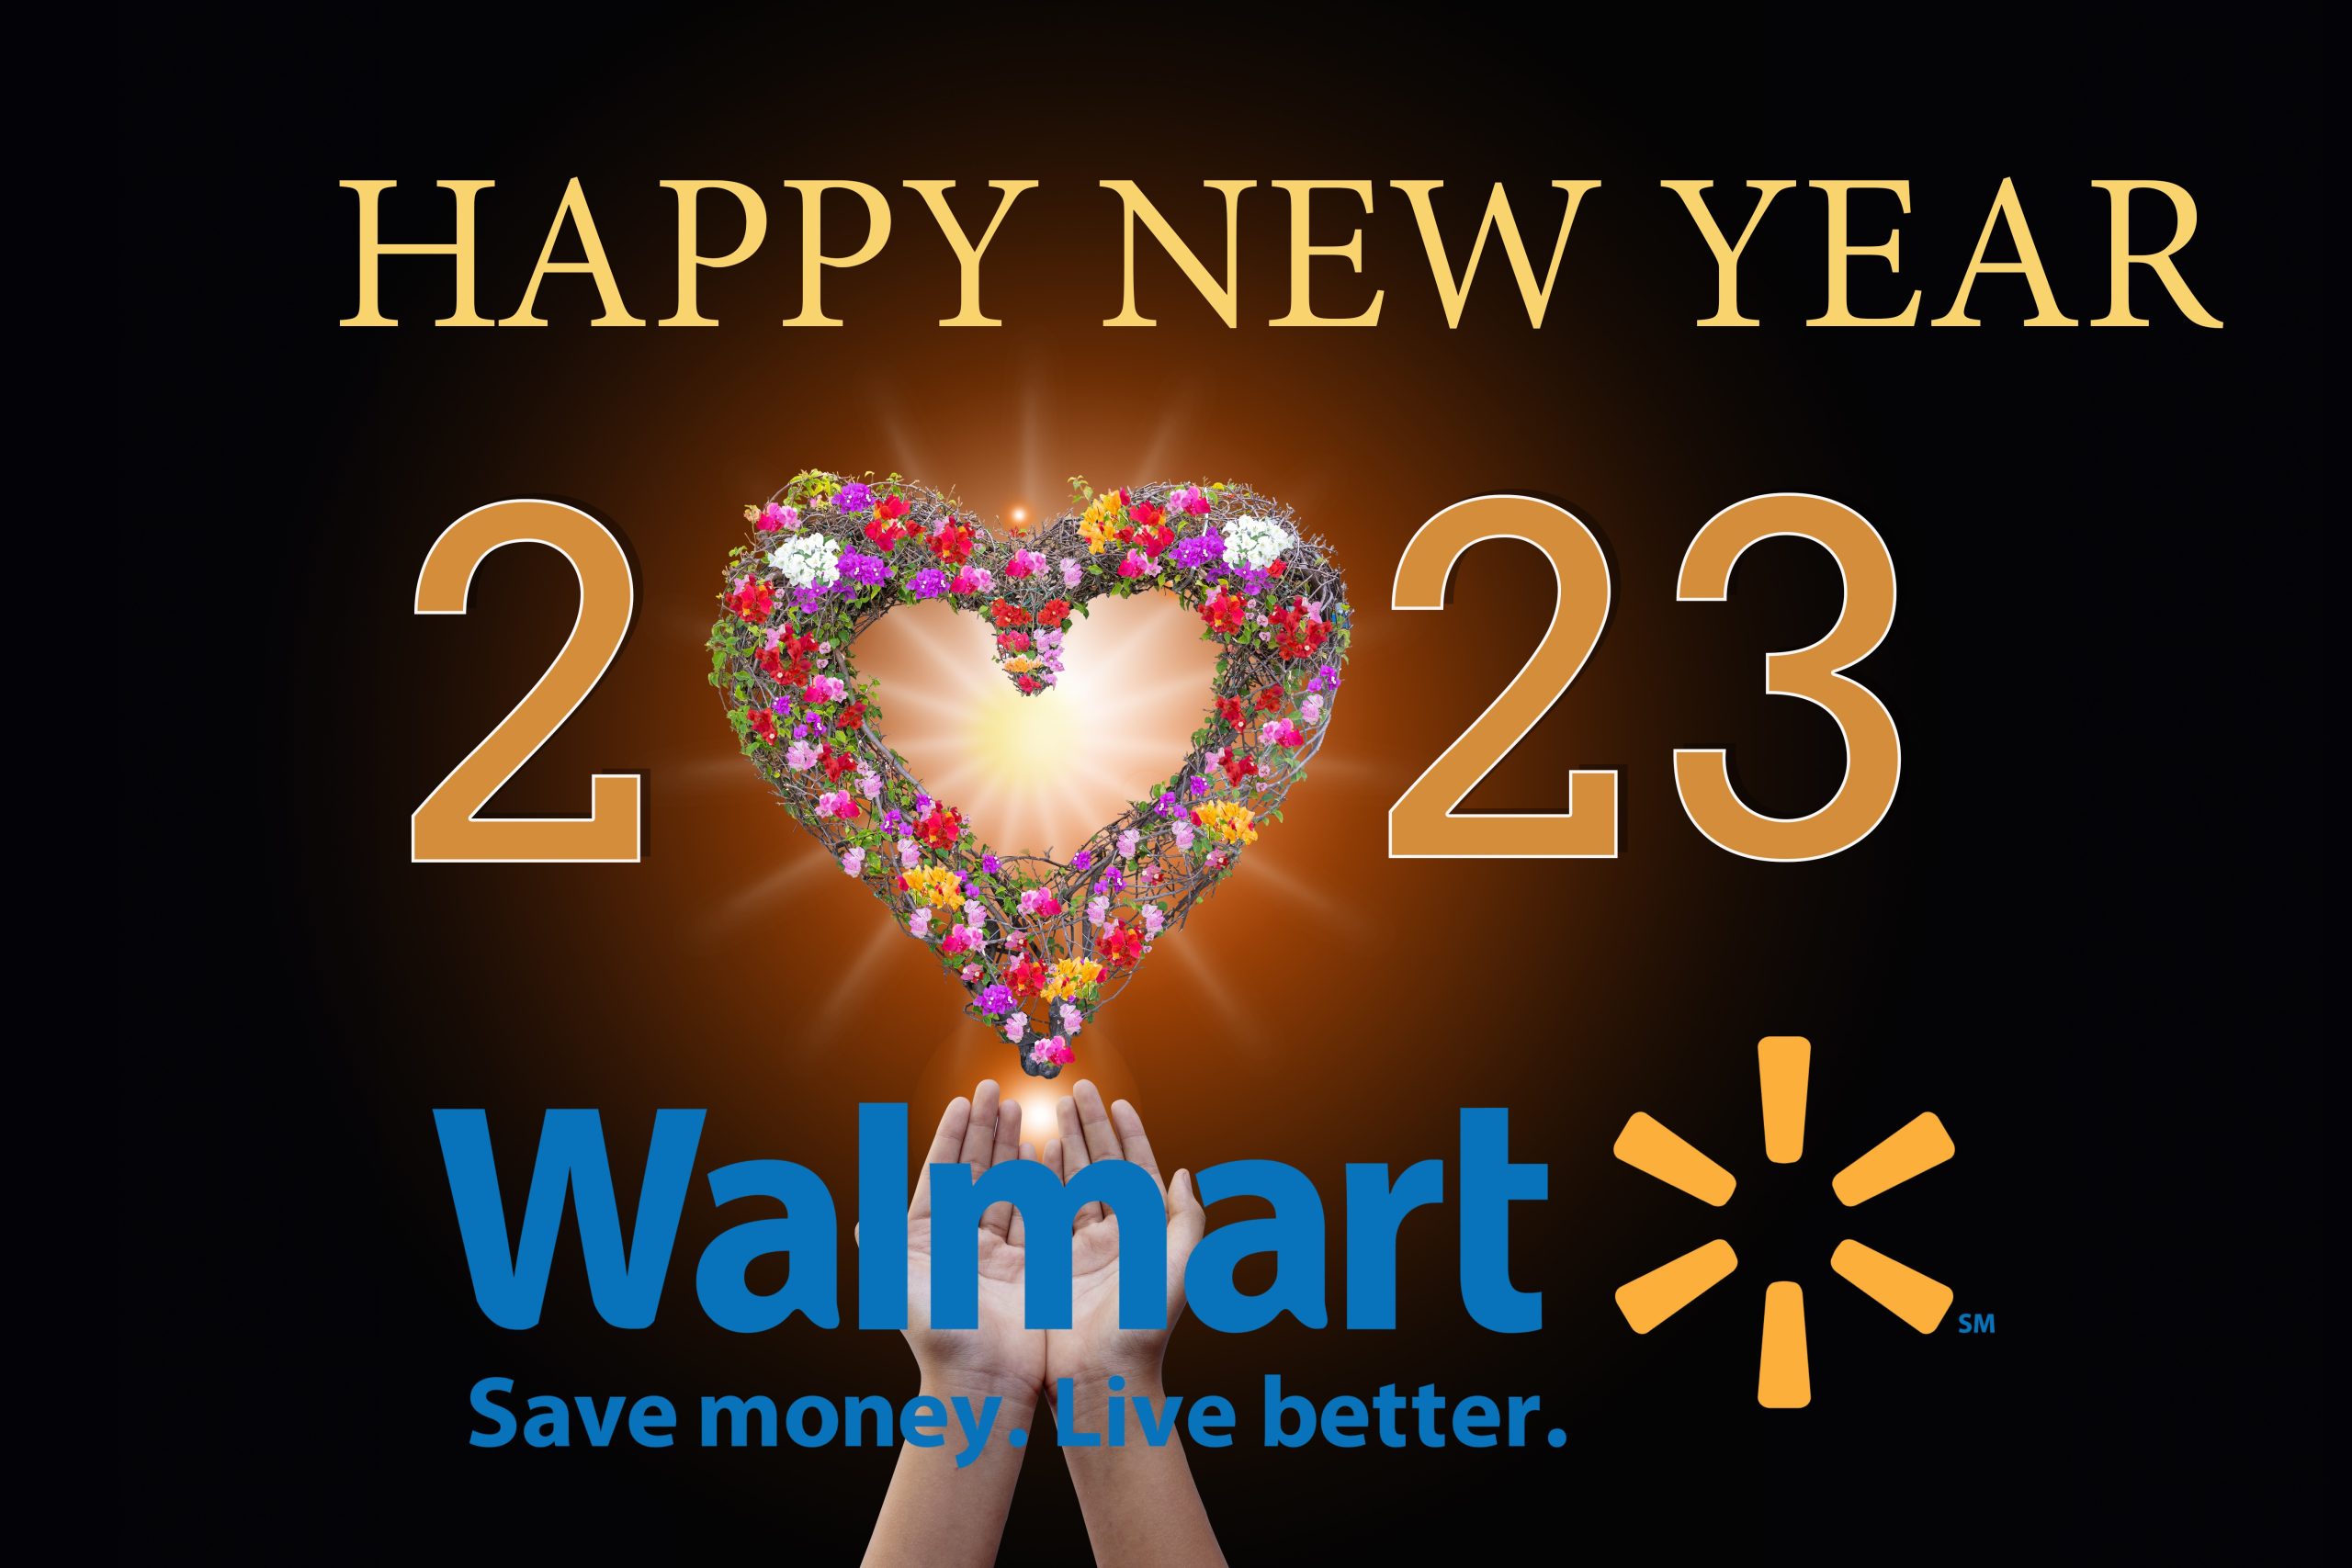 Is Walmart open on January 1, 2023?